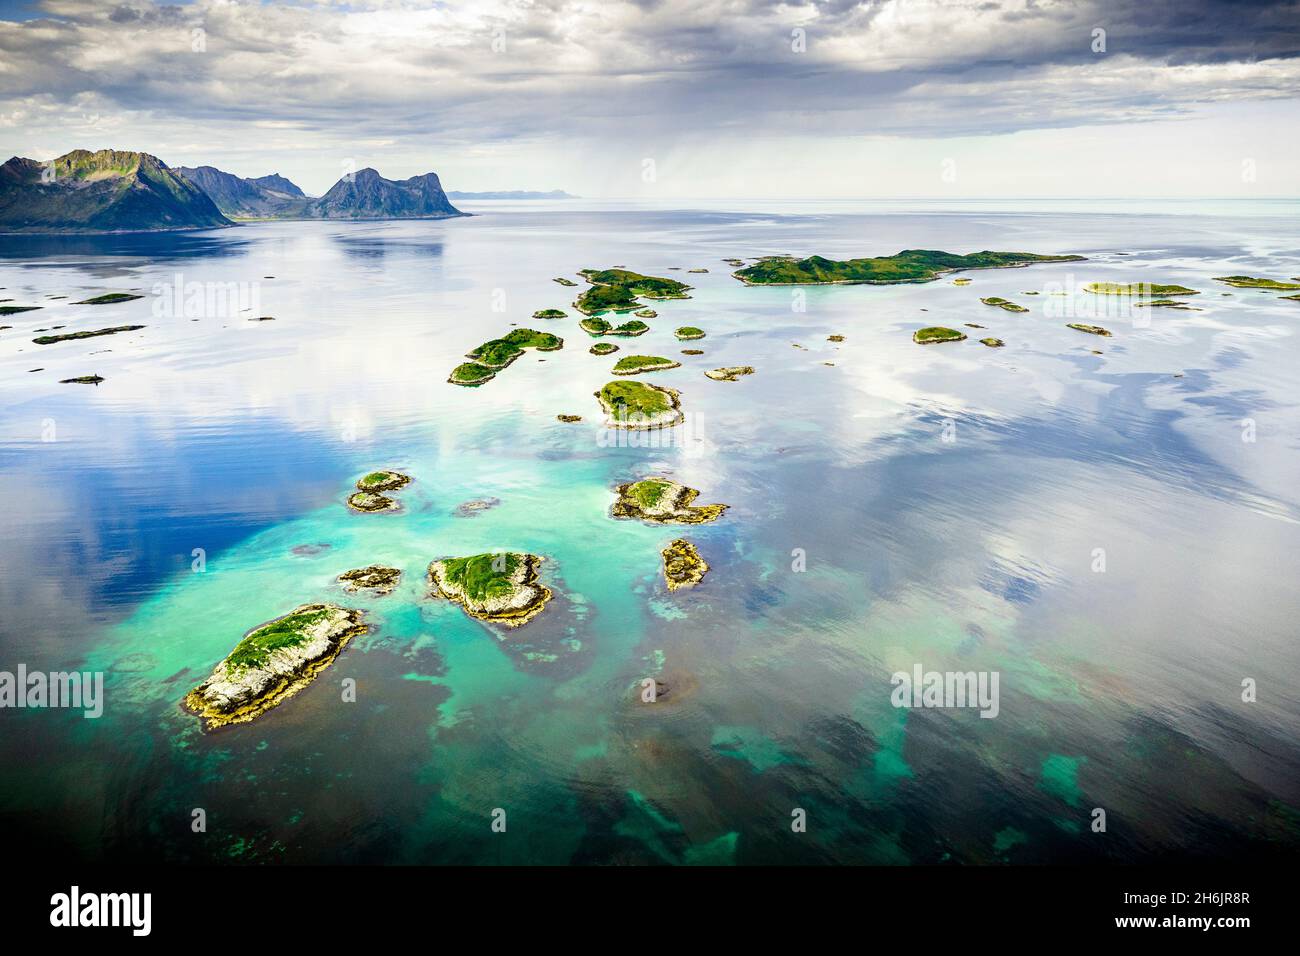 Wolkiger Himmel über den Bergsoyan Inseln im klaren Wasser des Fjords, Hamn i Senja, Skaland, Senja, Troms County, Norwegen, Skandinavien, Europa Stockfoto